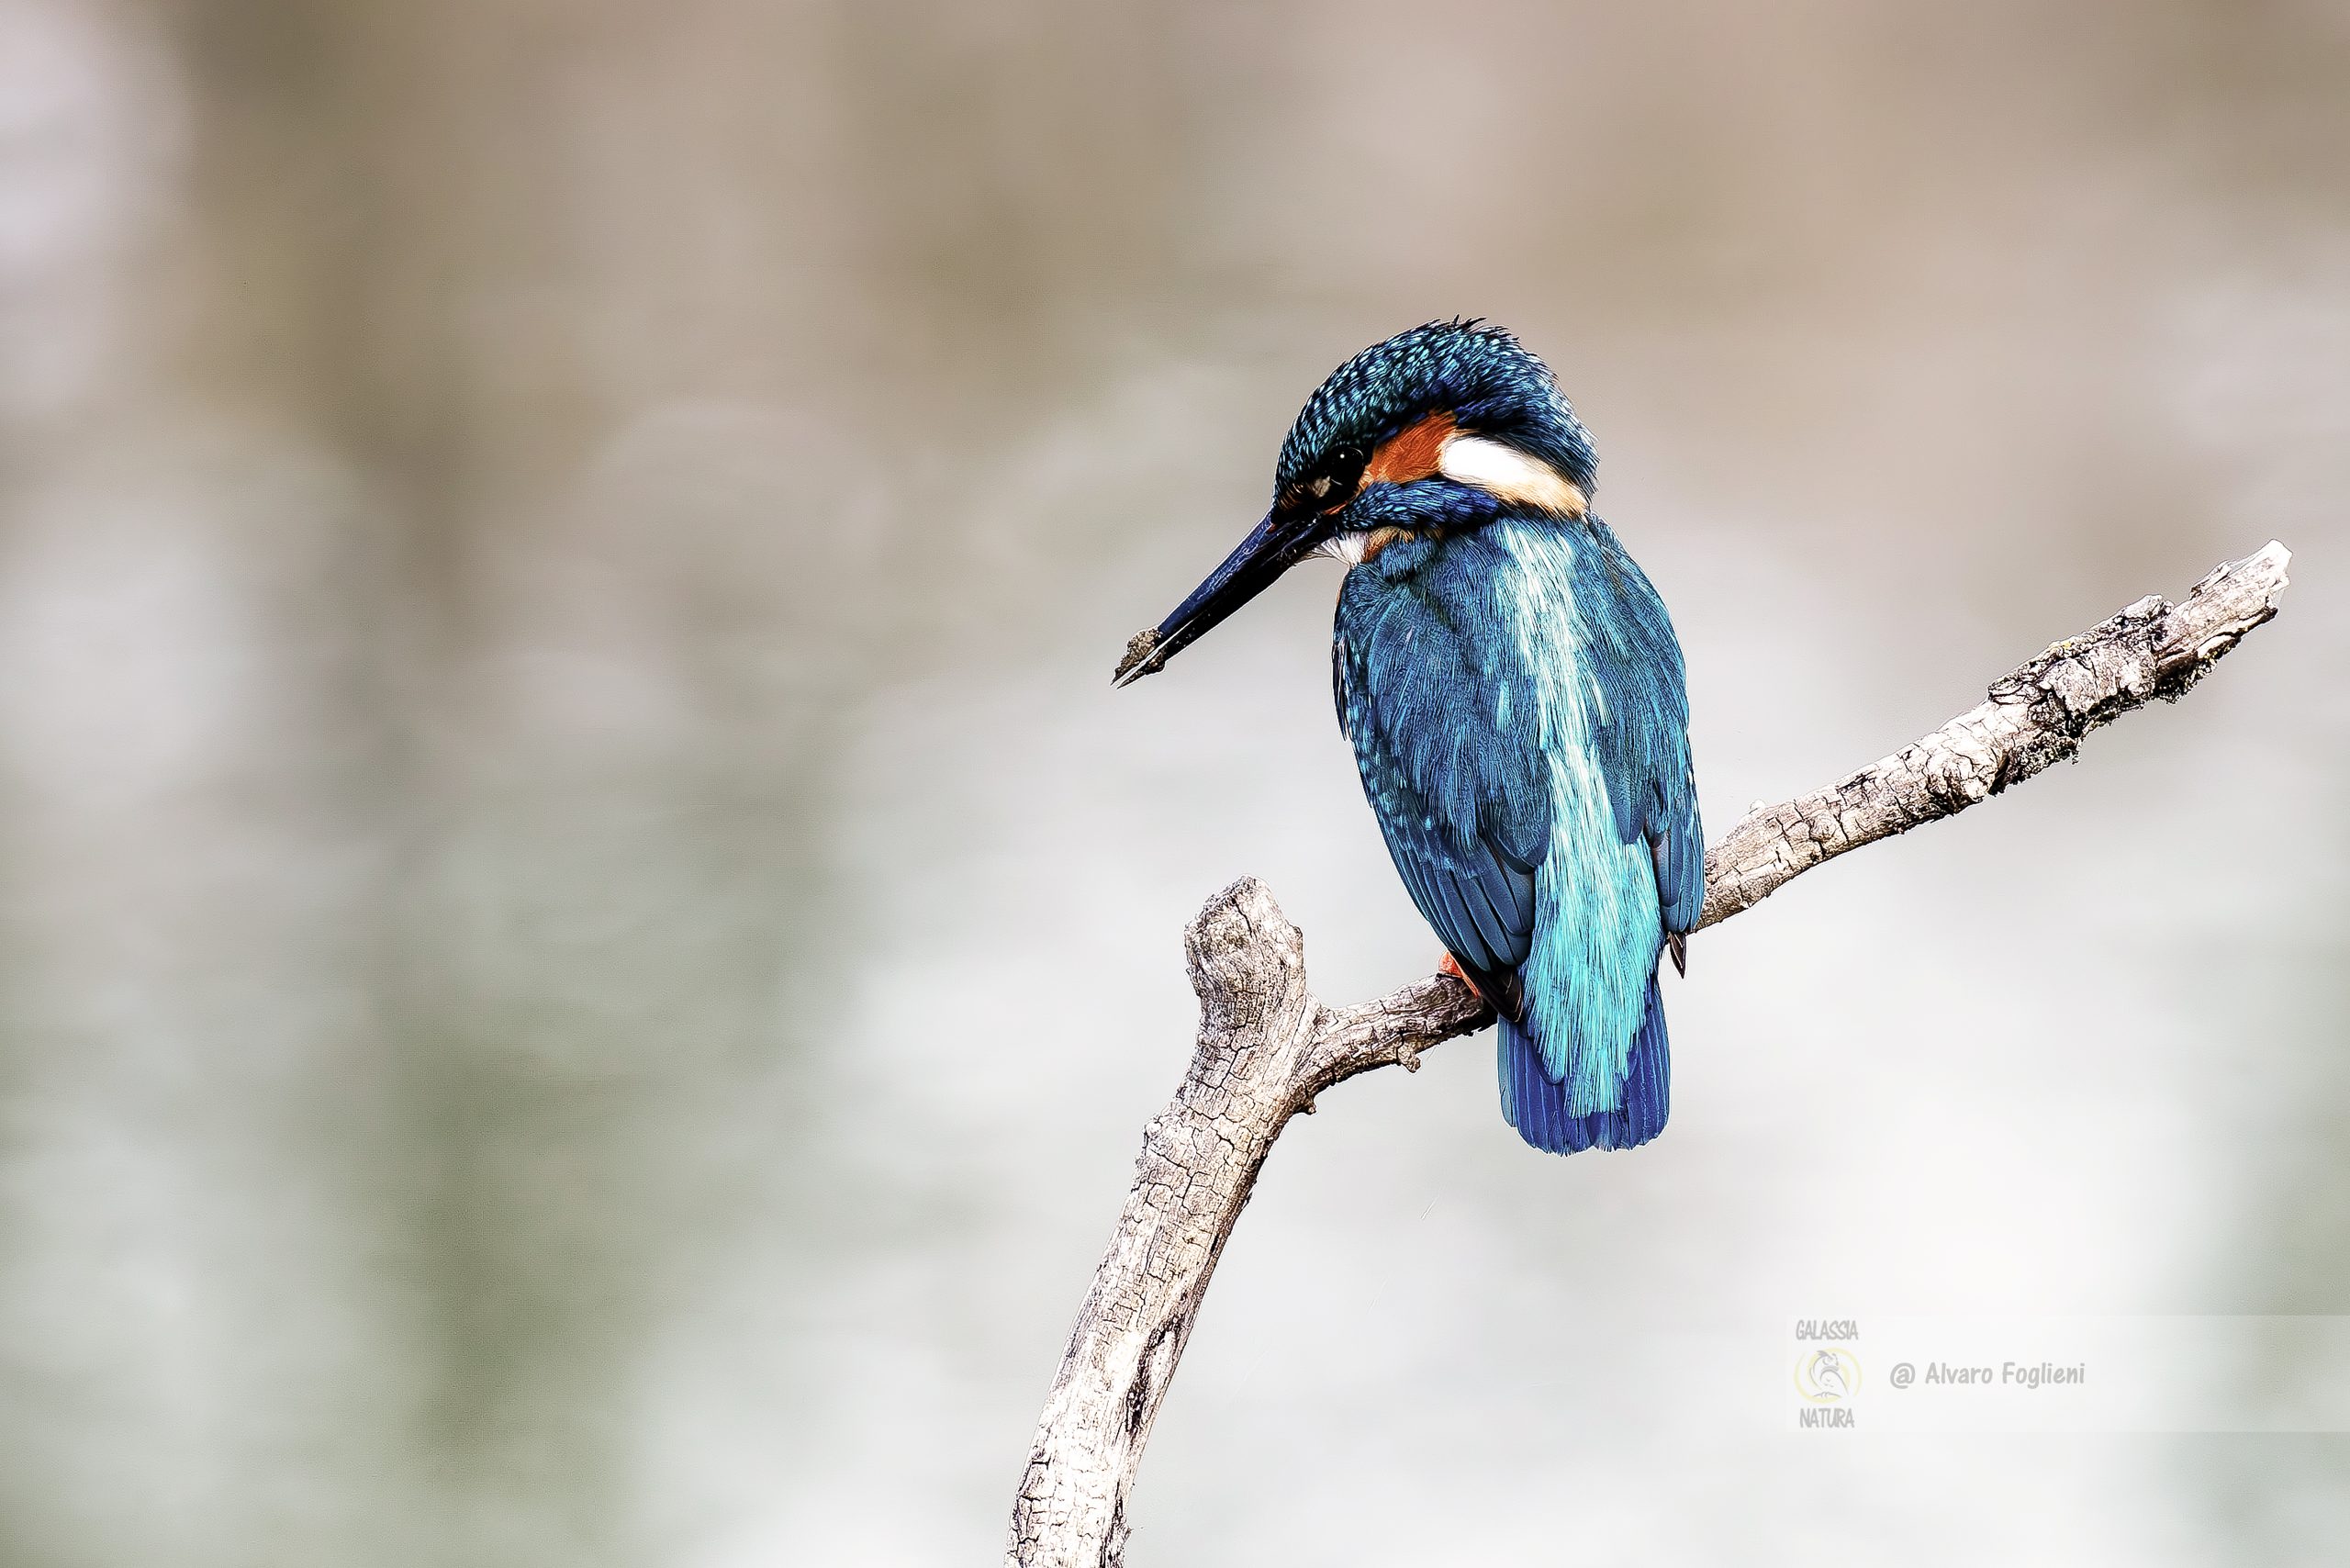 Elevare la fotografia di uccelli selvatici con conoscenza e pazienza, Catturare il comportamento degli uccelli selvatici, corso di fotografia naturalistica a Milano